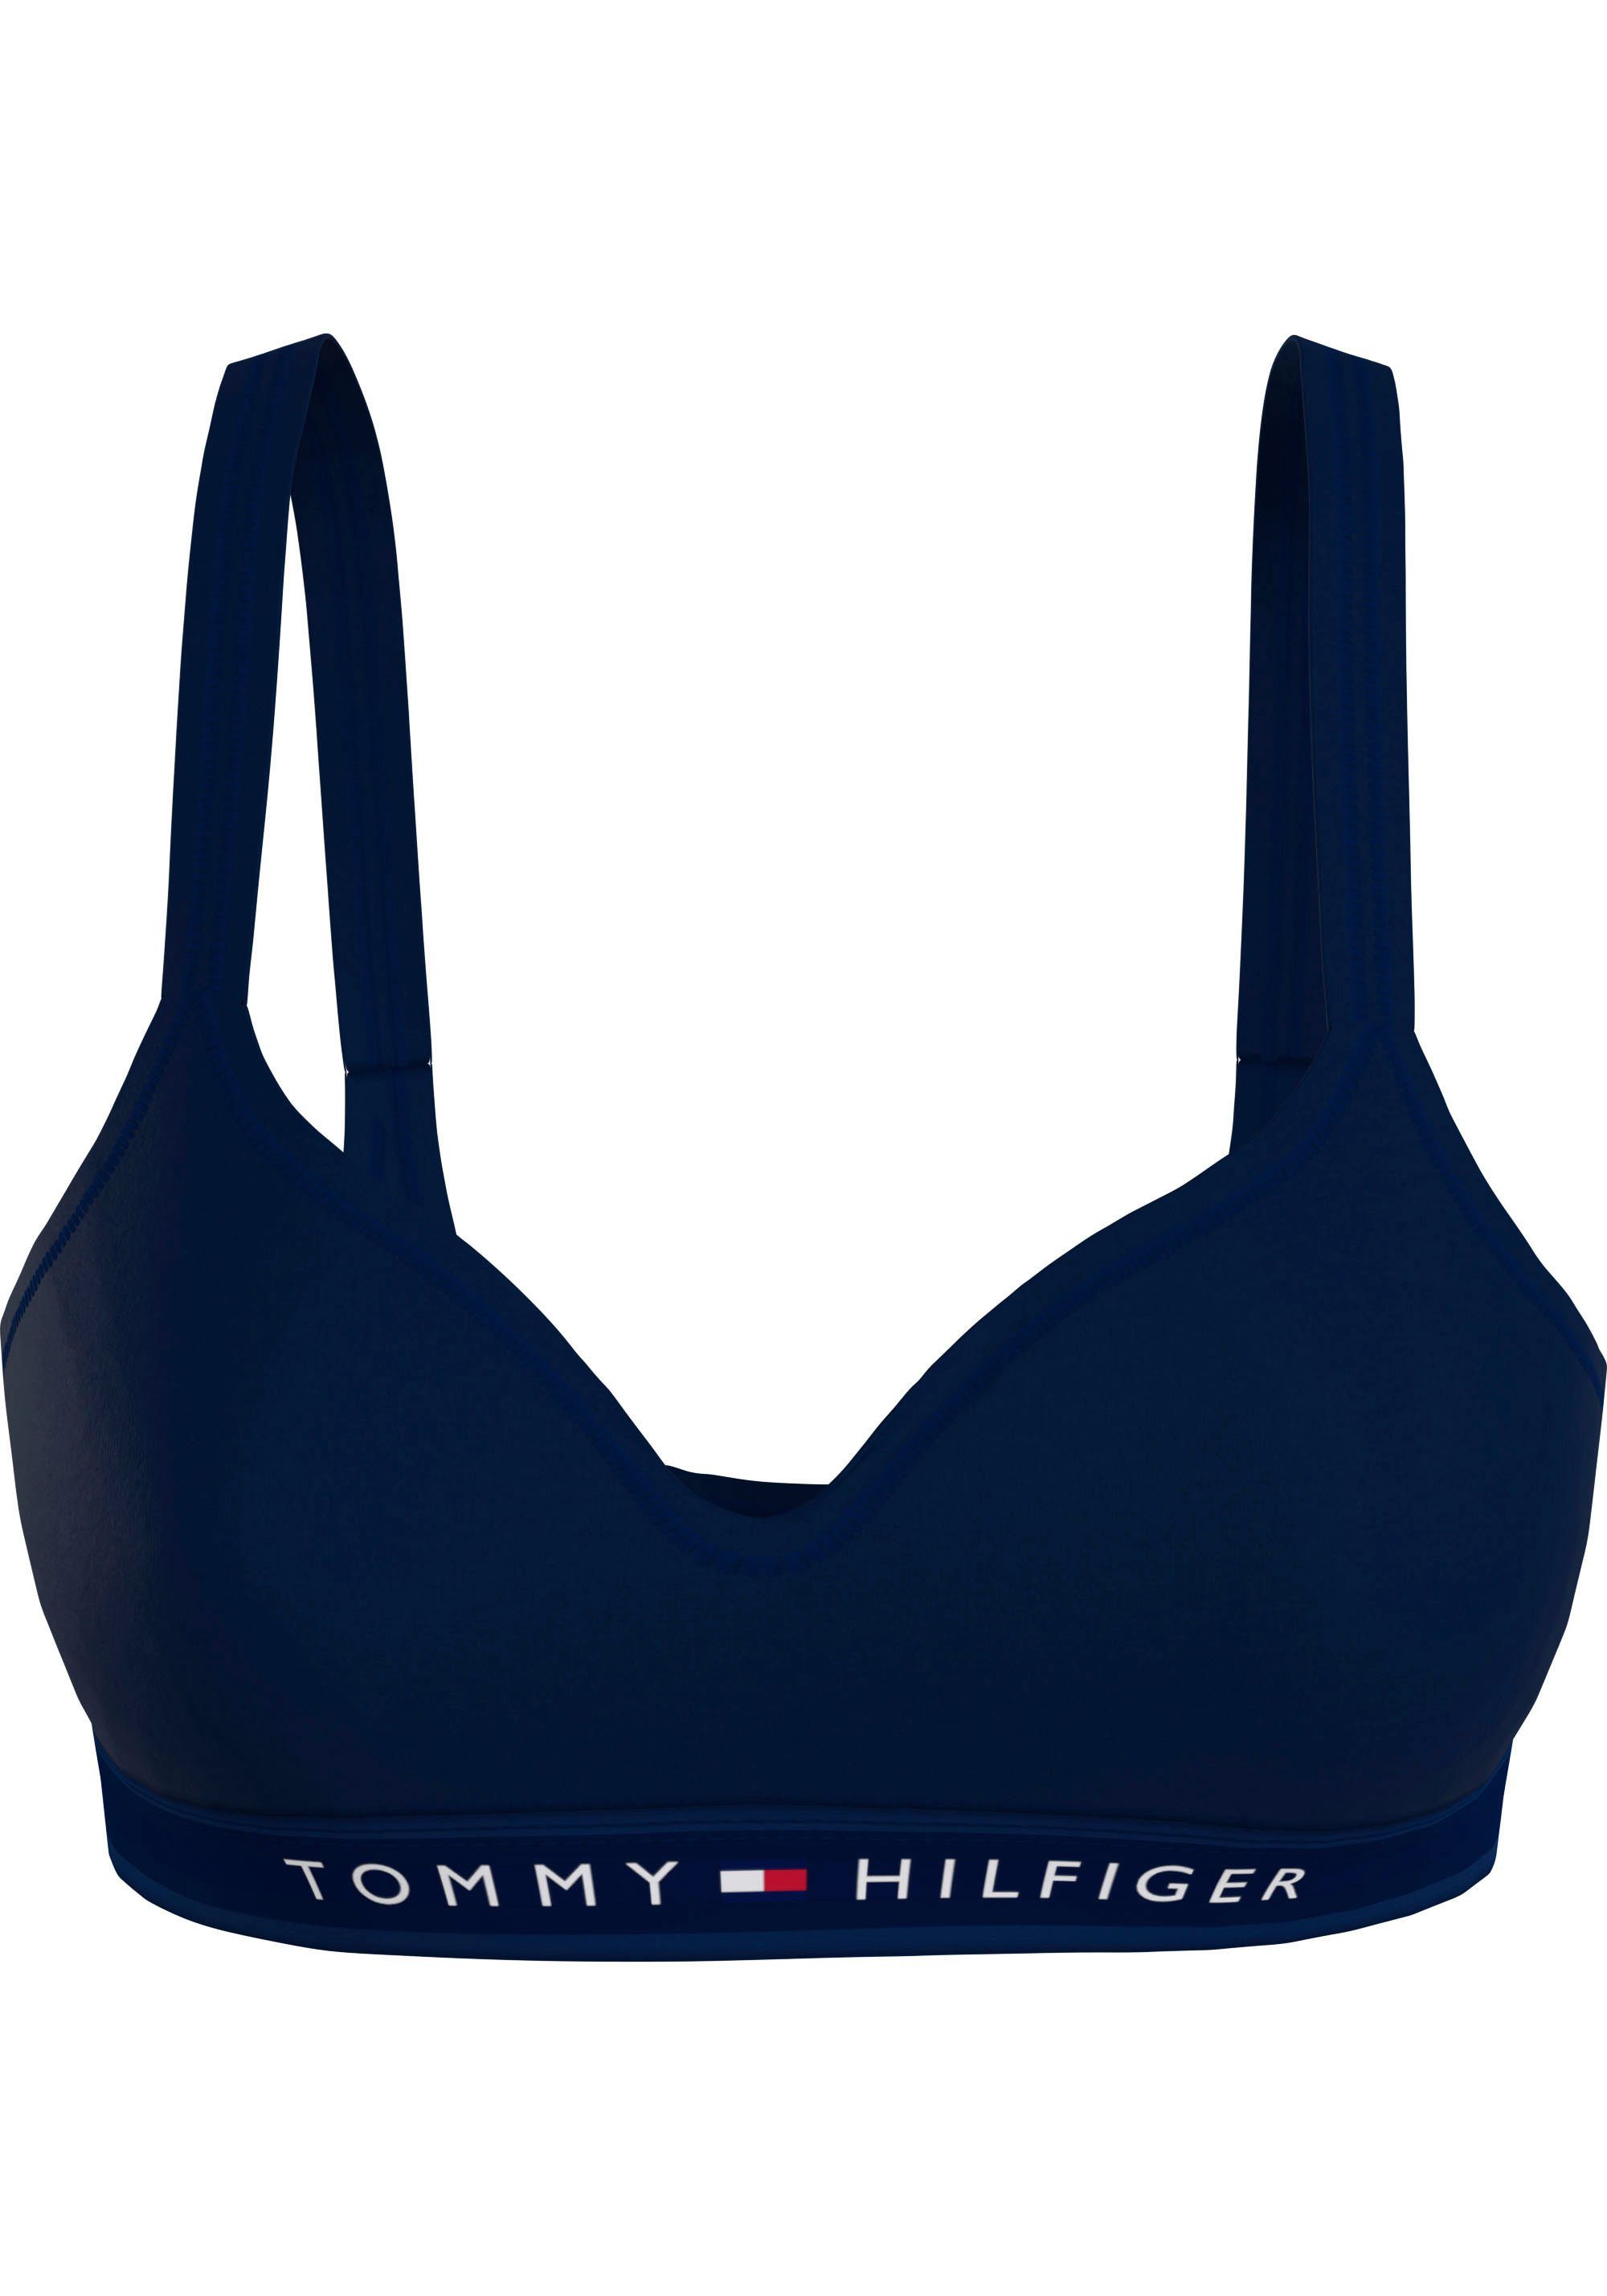 Hilfiger Desert-Sky Hilfiger BRALETTE Bralette-BH Markenlabel Tommy LIFT Tommy Underwear mit